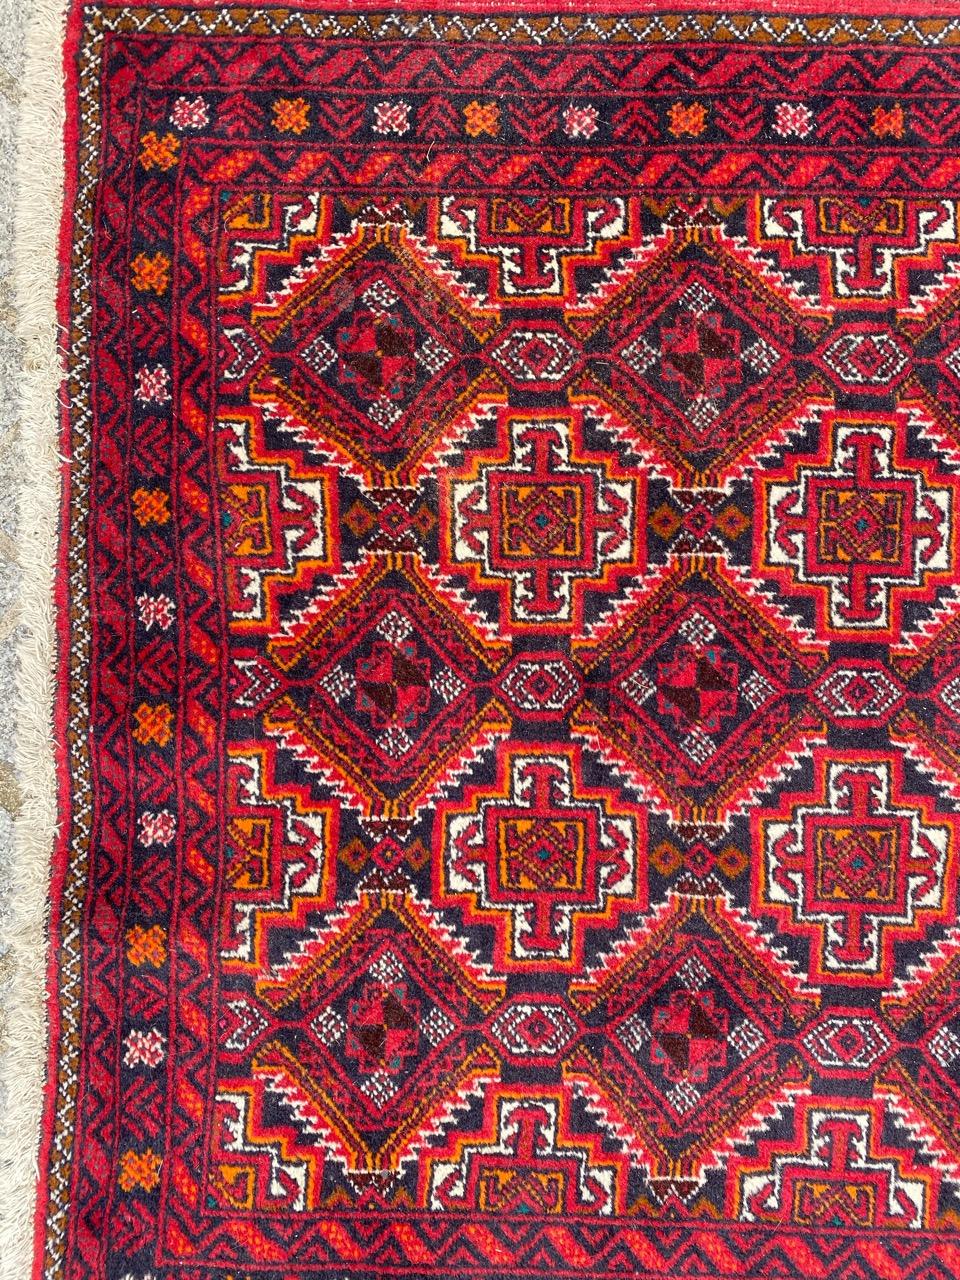 Tapis afghan turkmène du milieu du siècle avec un beau design tribal et de belles couleurs, entièrement noué à la main avec du velours de laine sur une base de coton.

✨✨✨
